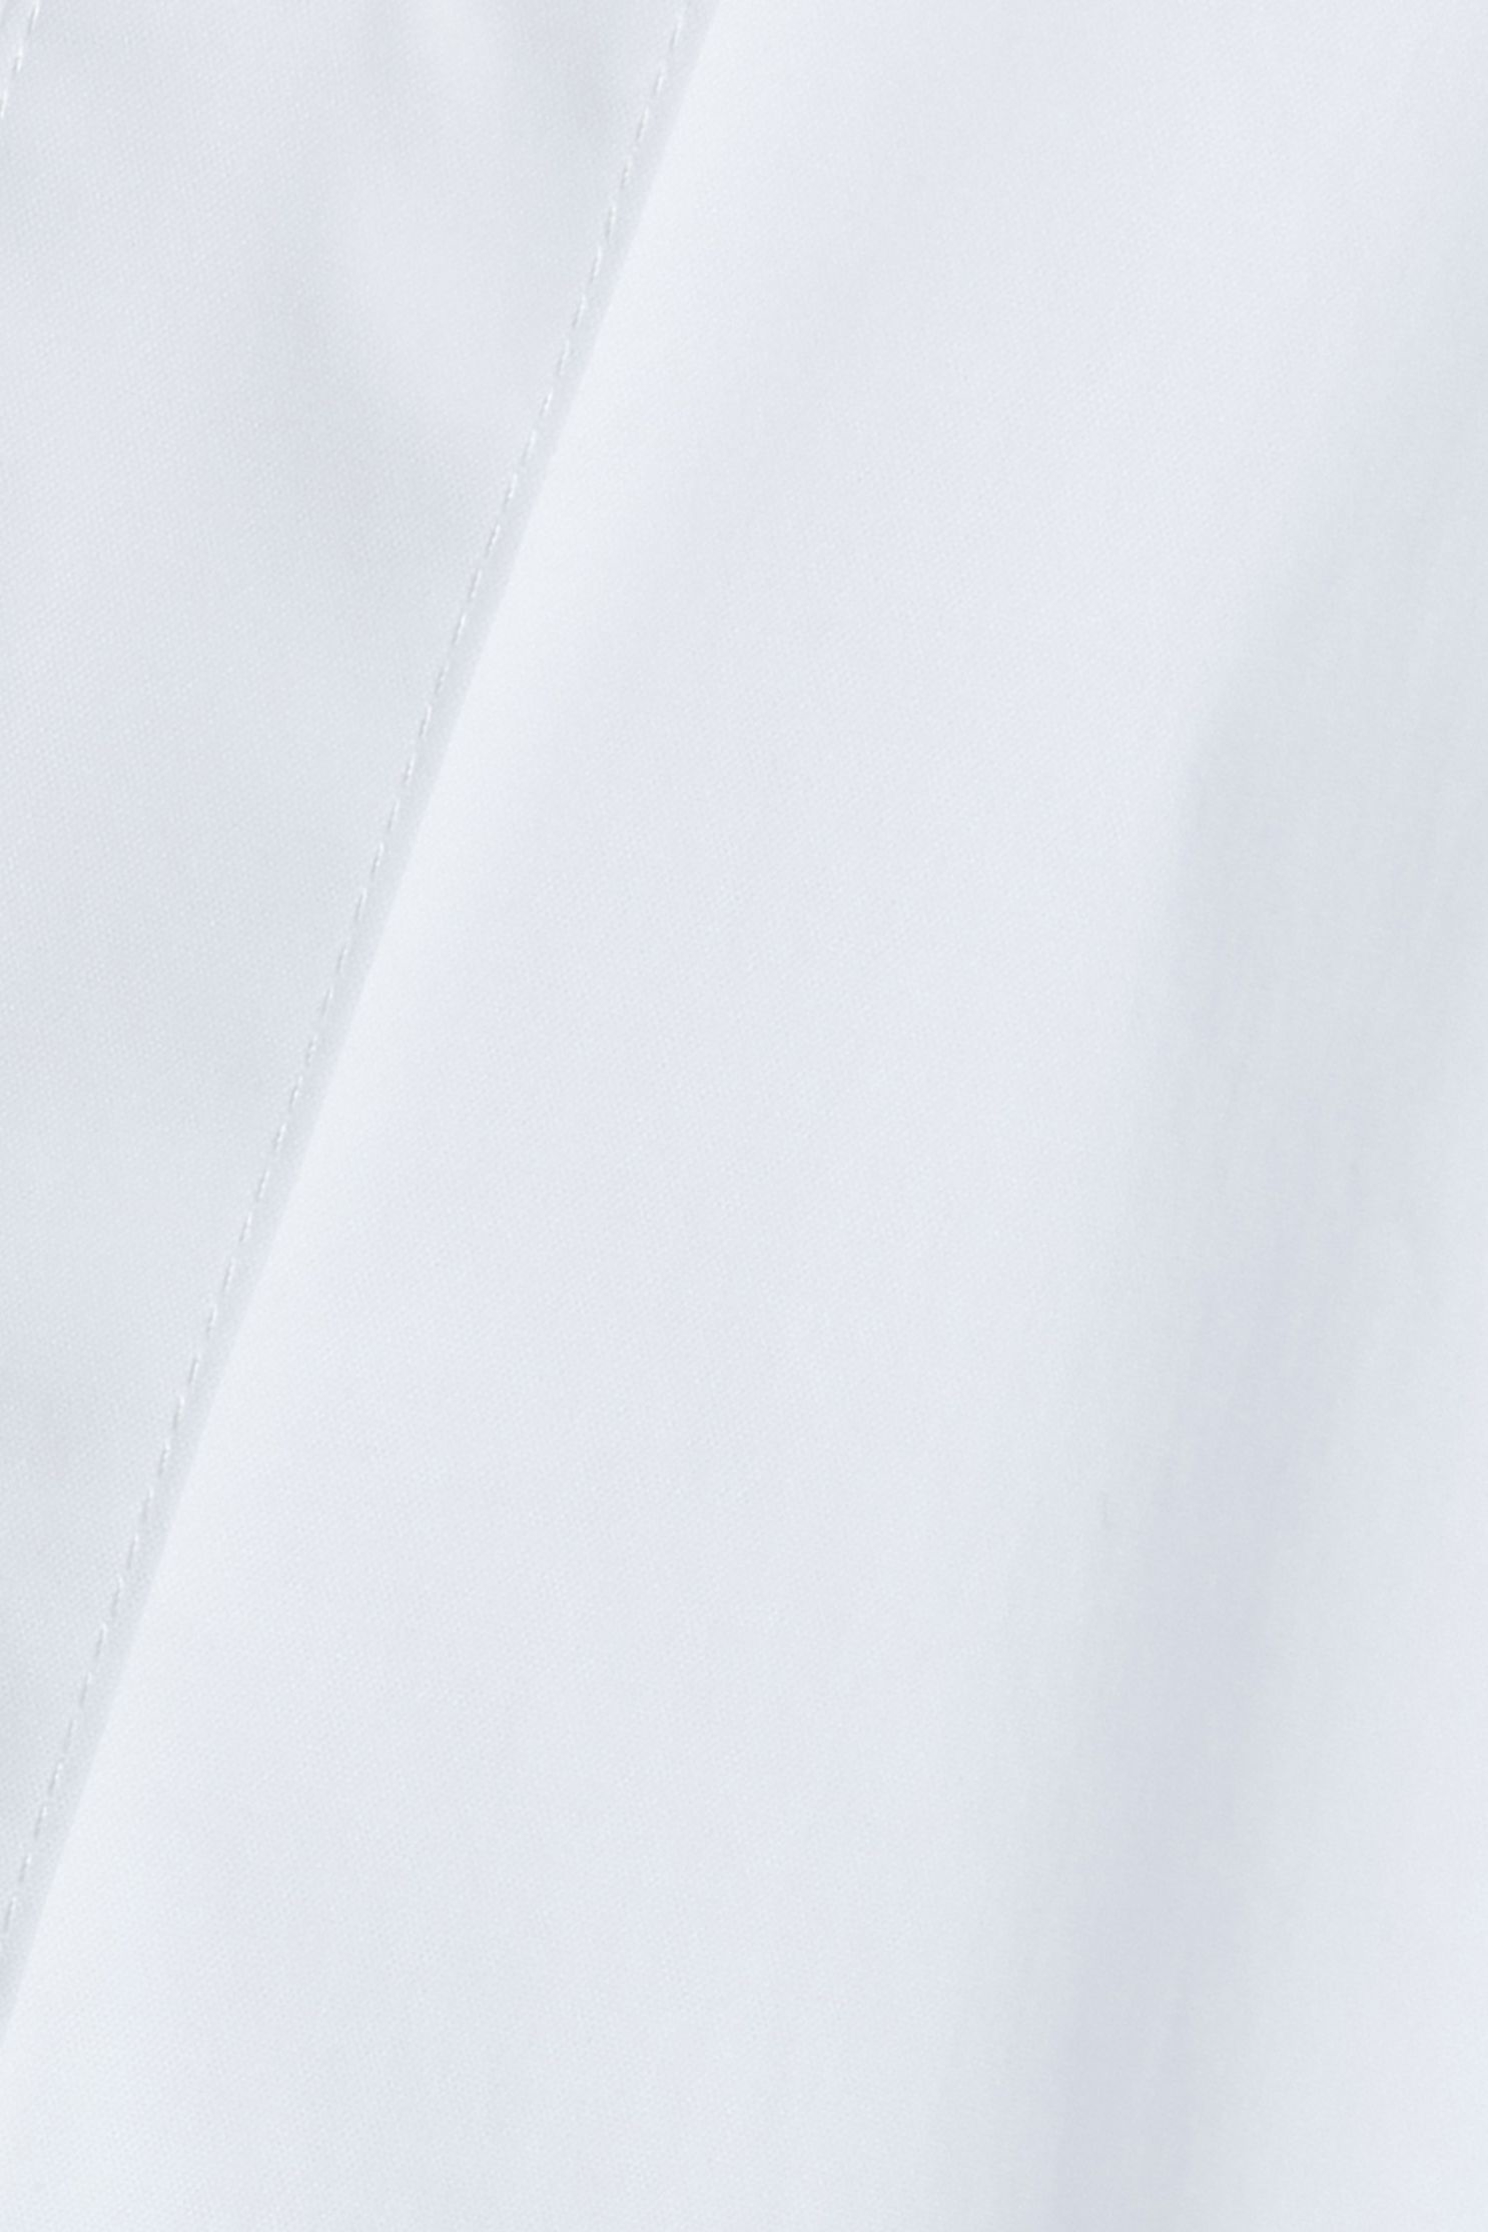 Balloon long sleeve shirt,Season (SS) Look,White tops,Blouses